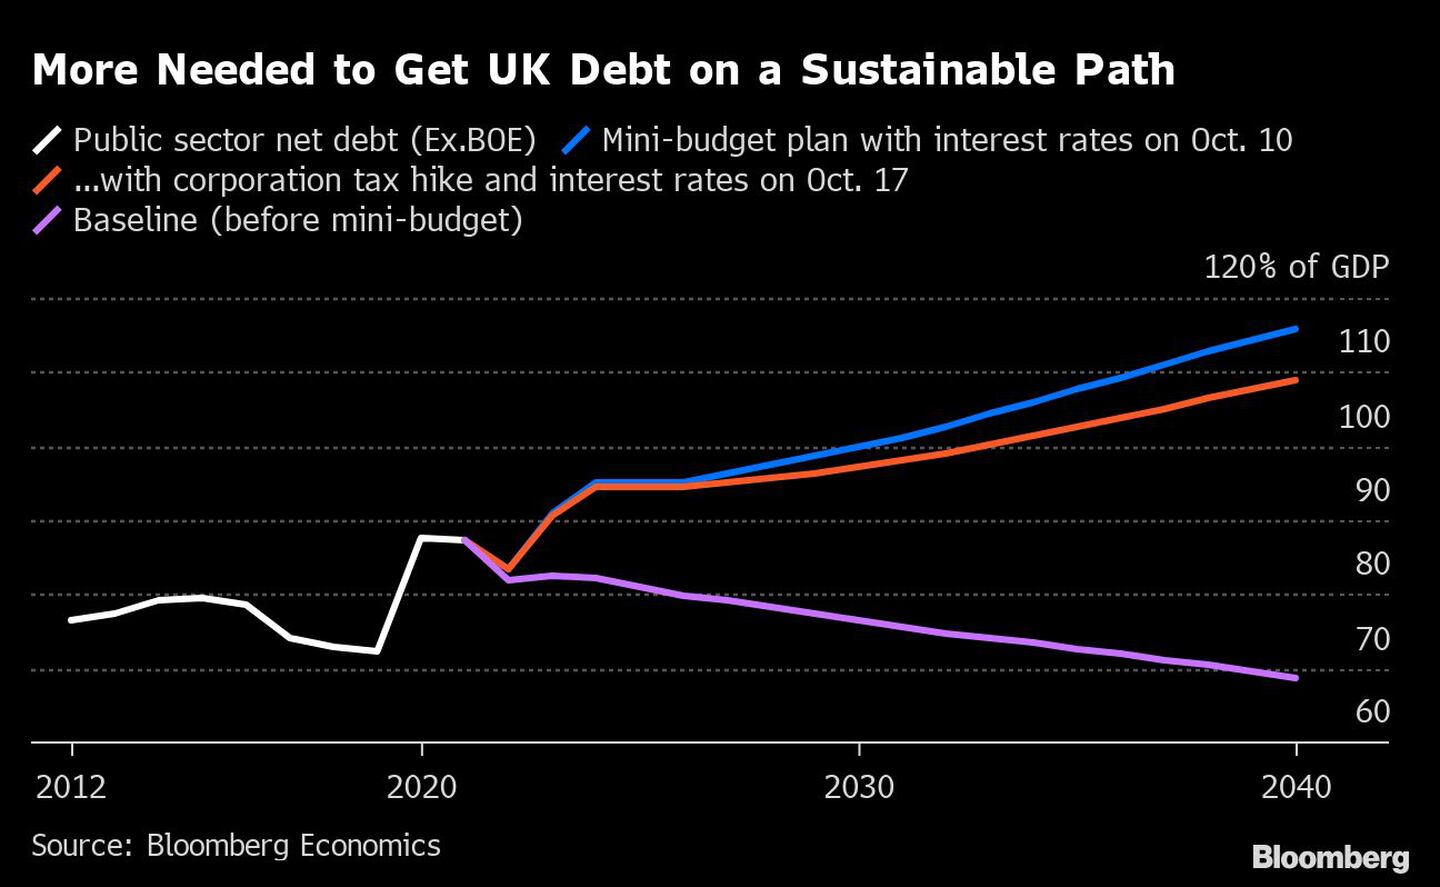 Se necesita más para que la deuda británica esté en un camino sostenibledfd